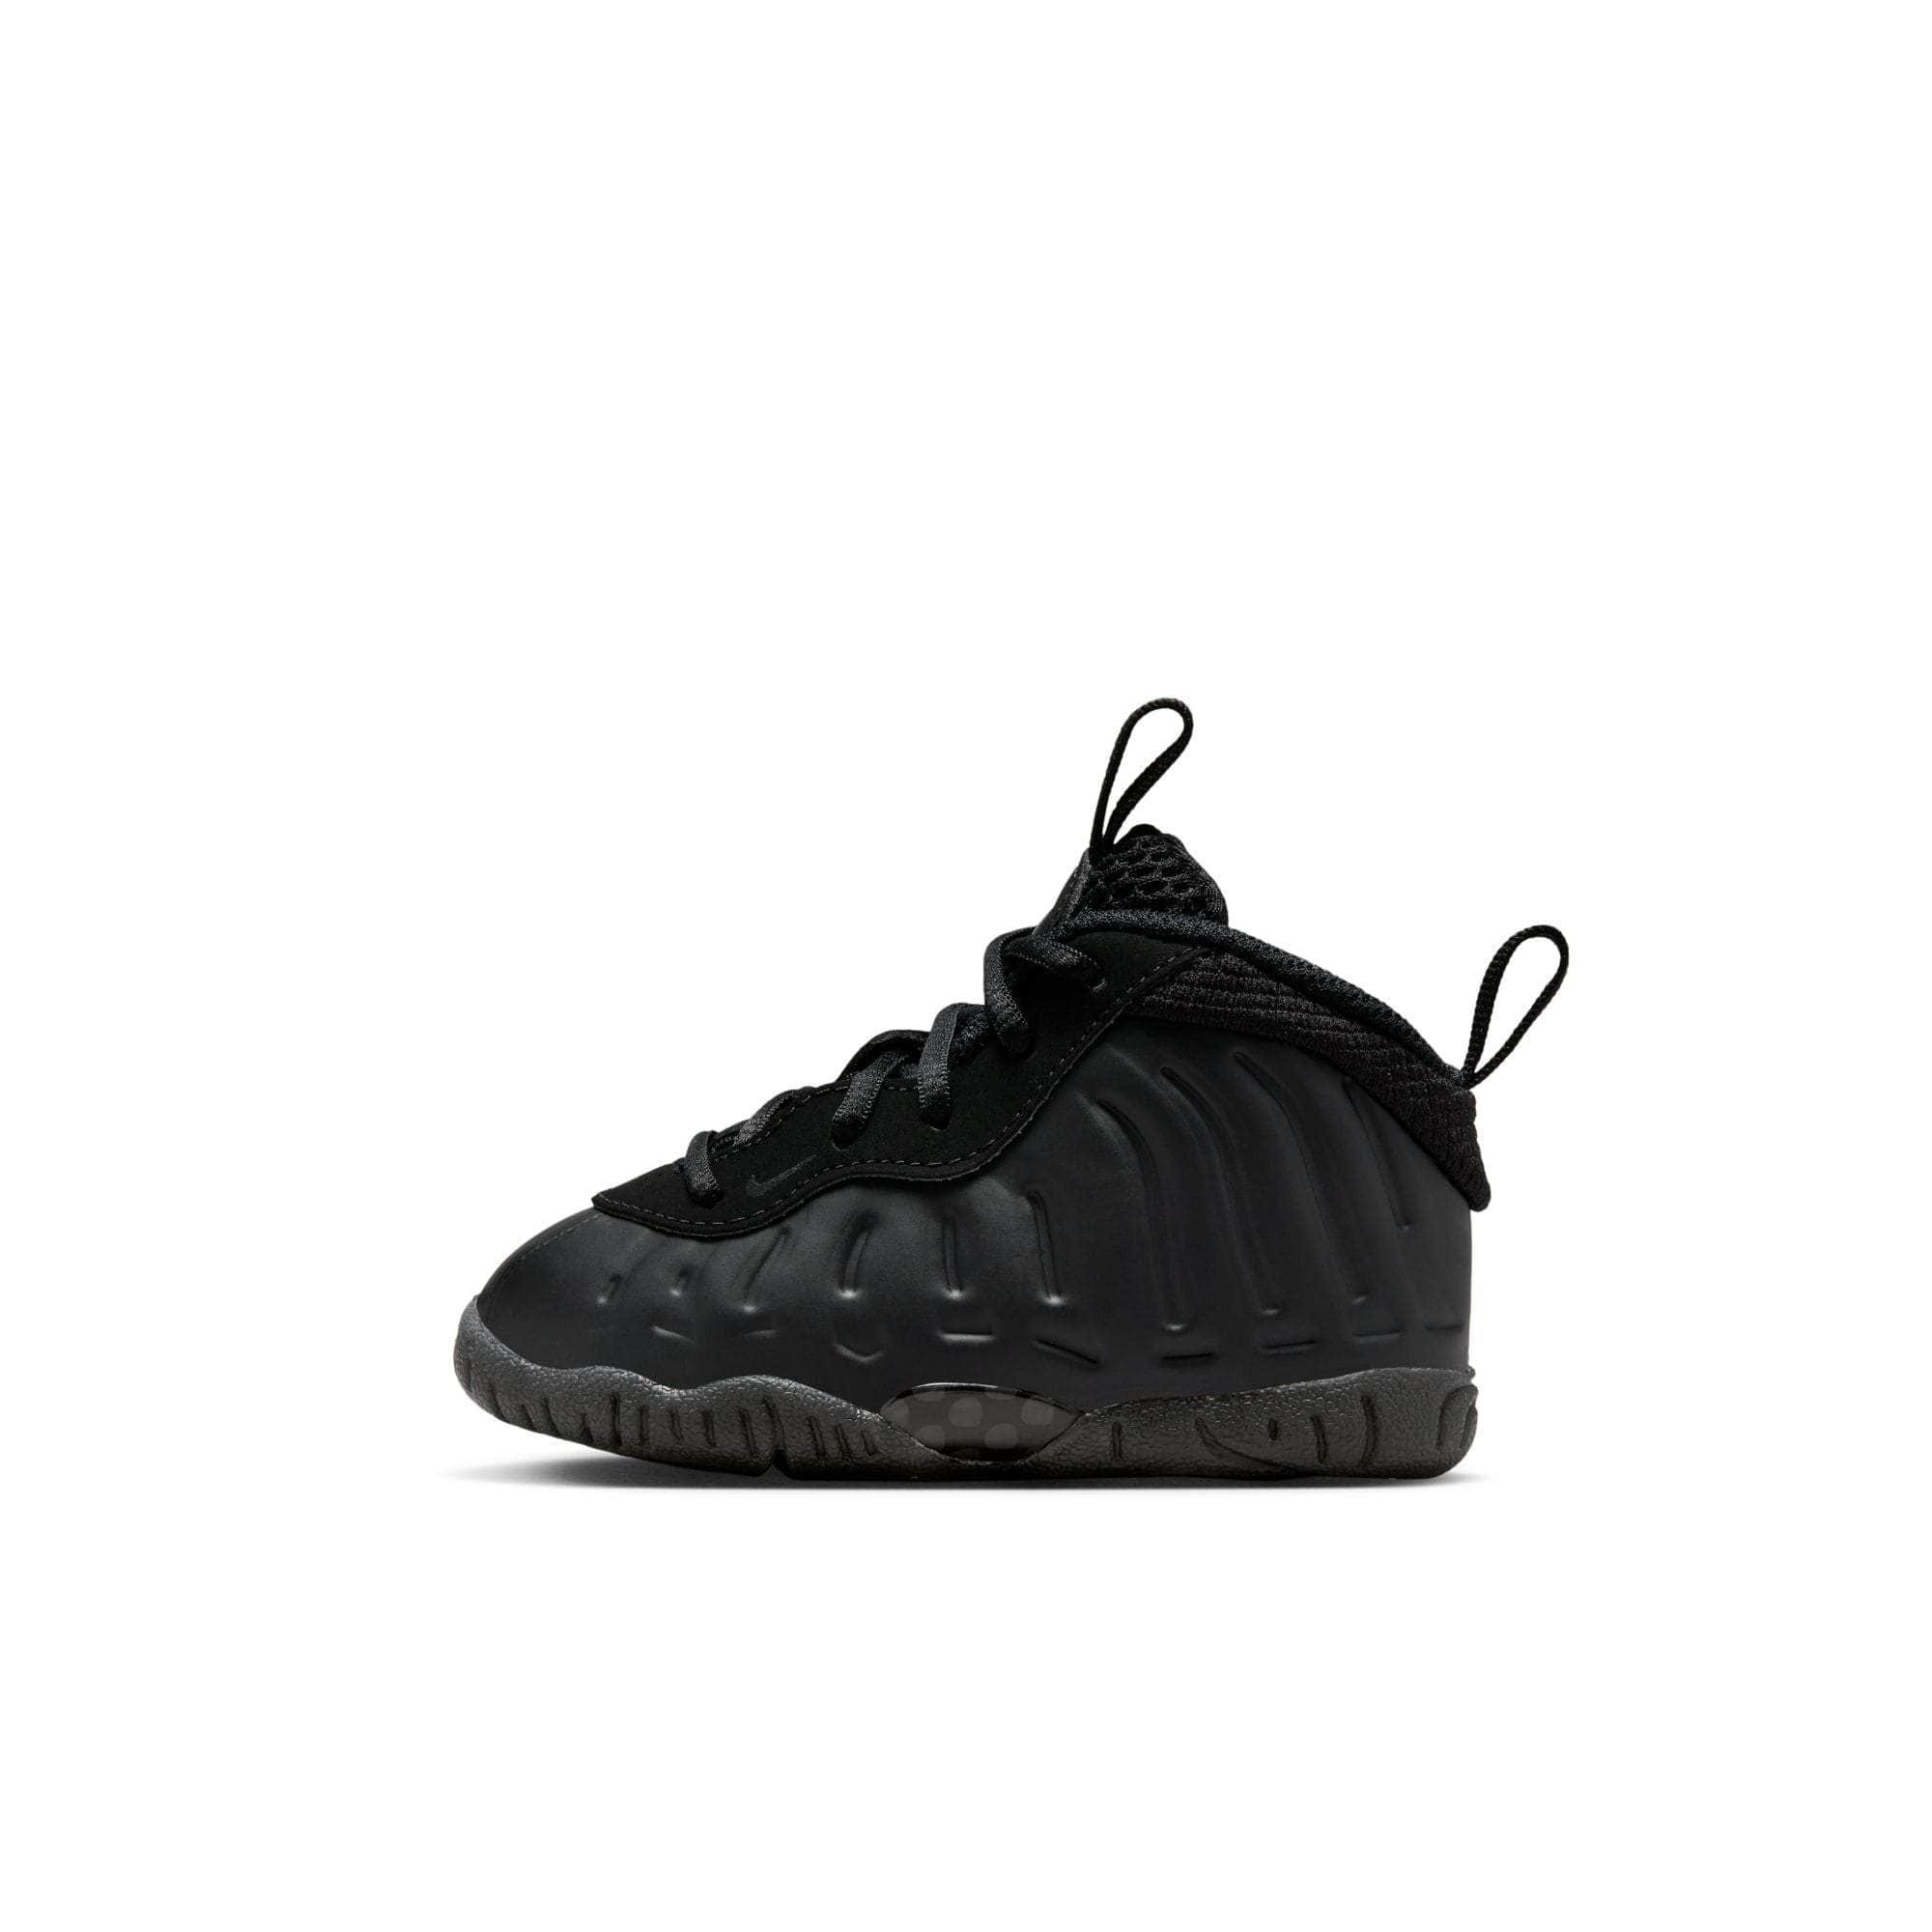 Chaussons Nike Kawa Slide Jr DD3242 001 le noir - KeeShoes